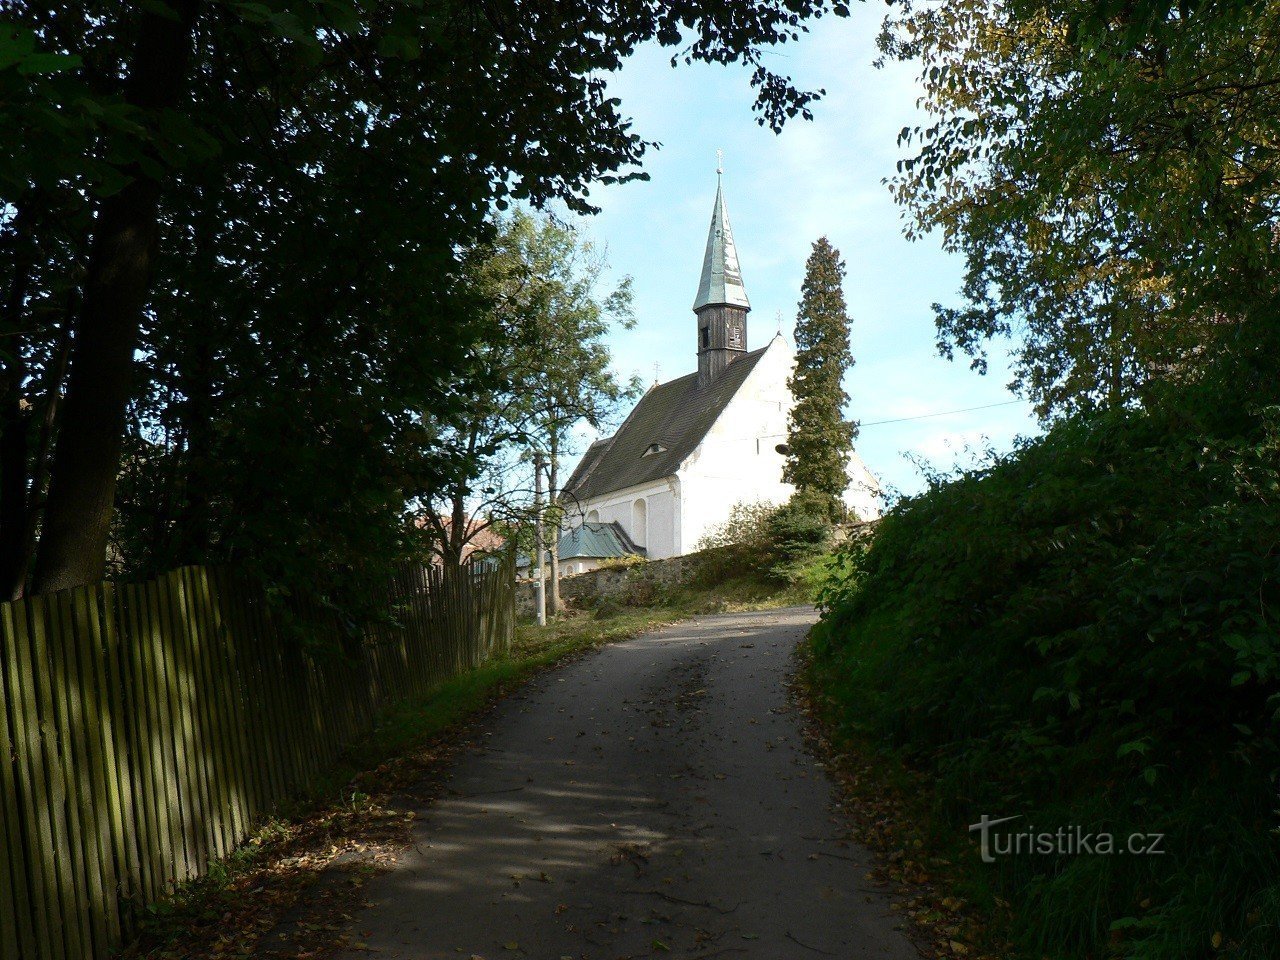 Borgo, chiesa di S. Lawrence